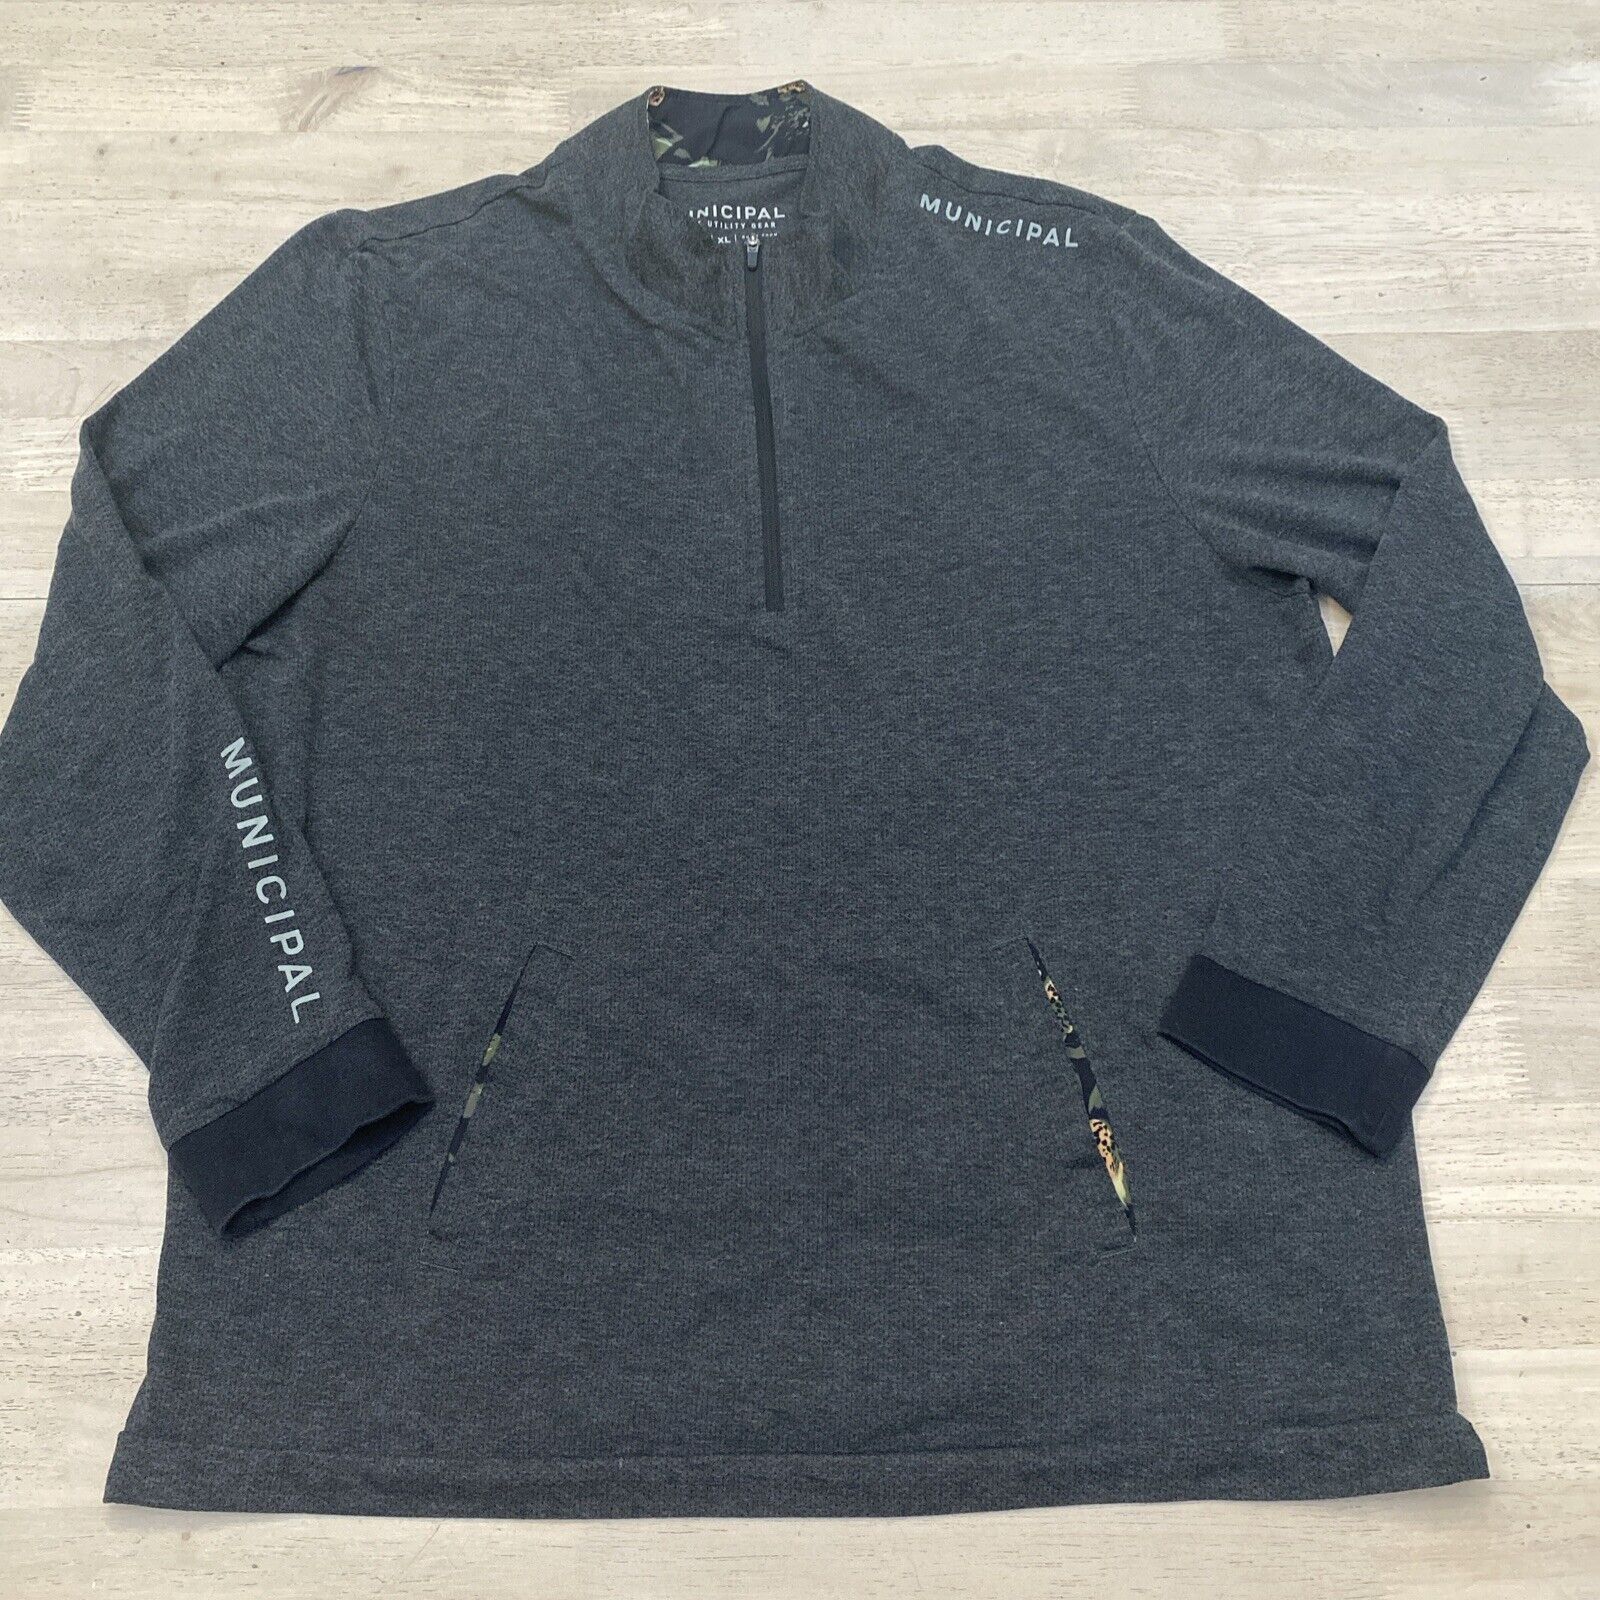 Municipal Sport Utility Gear Mens XL Gray Long Sleeve 1/4 Zip Pullover Sweater